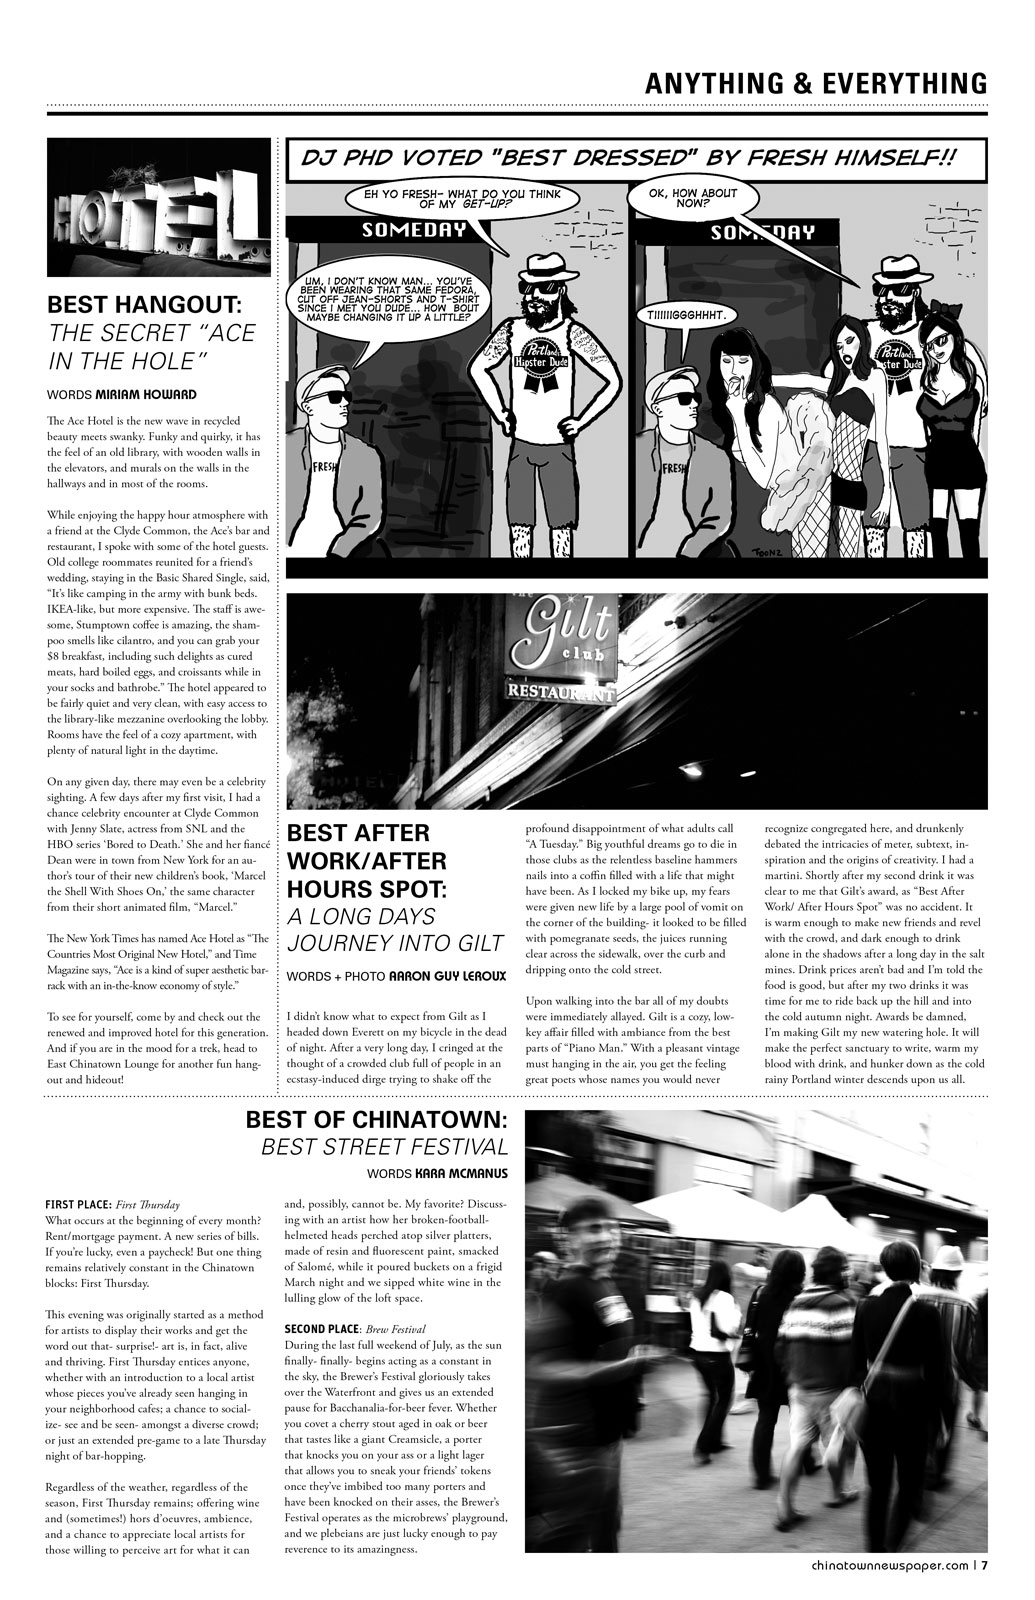 Chinatown Newspaper december 2011 4